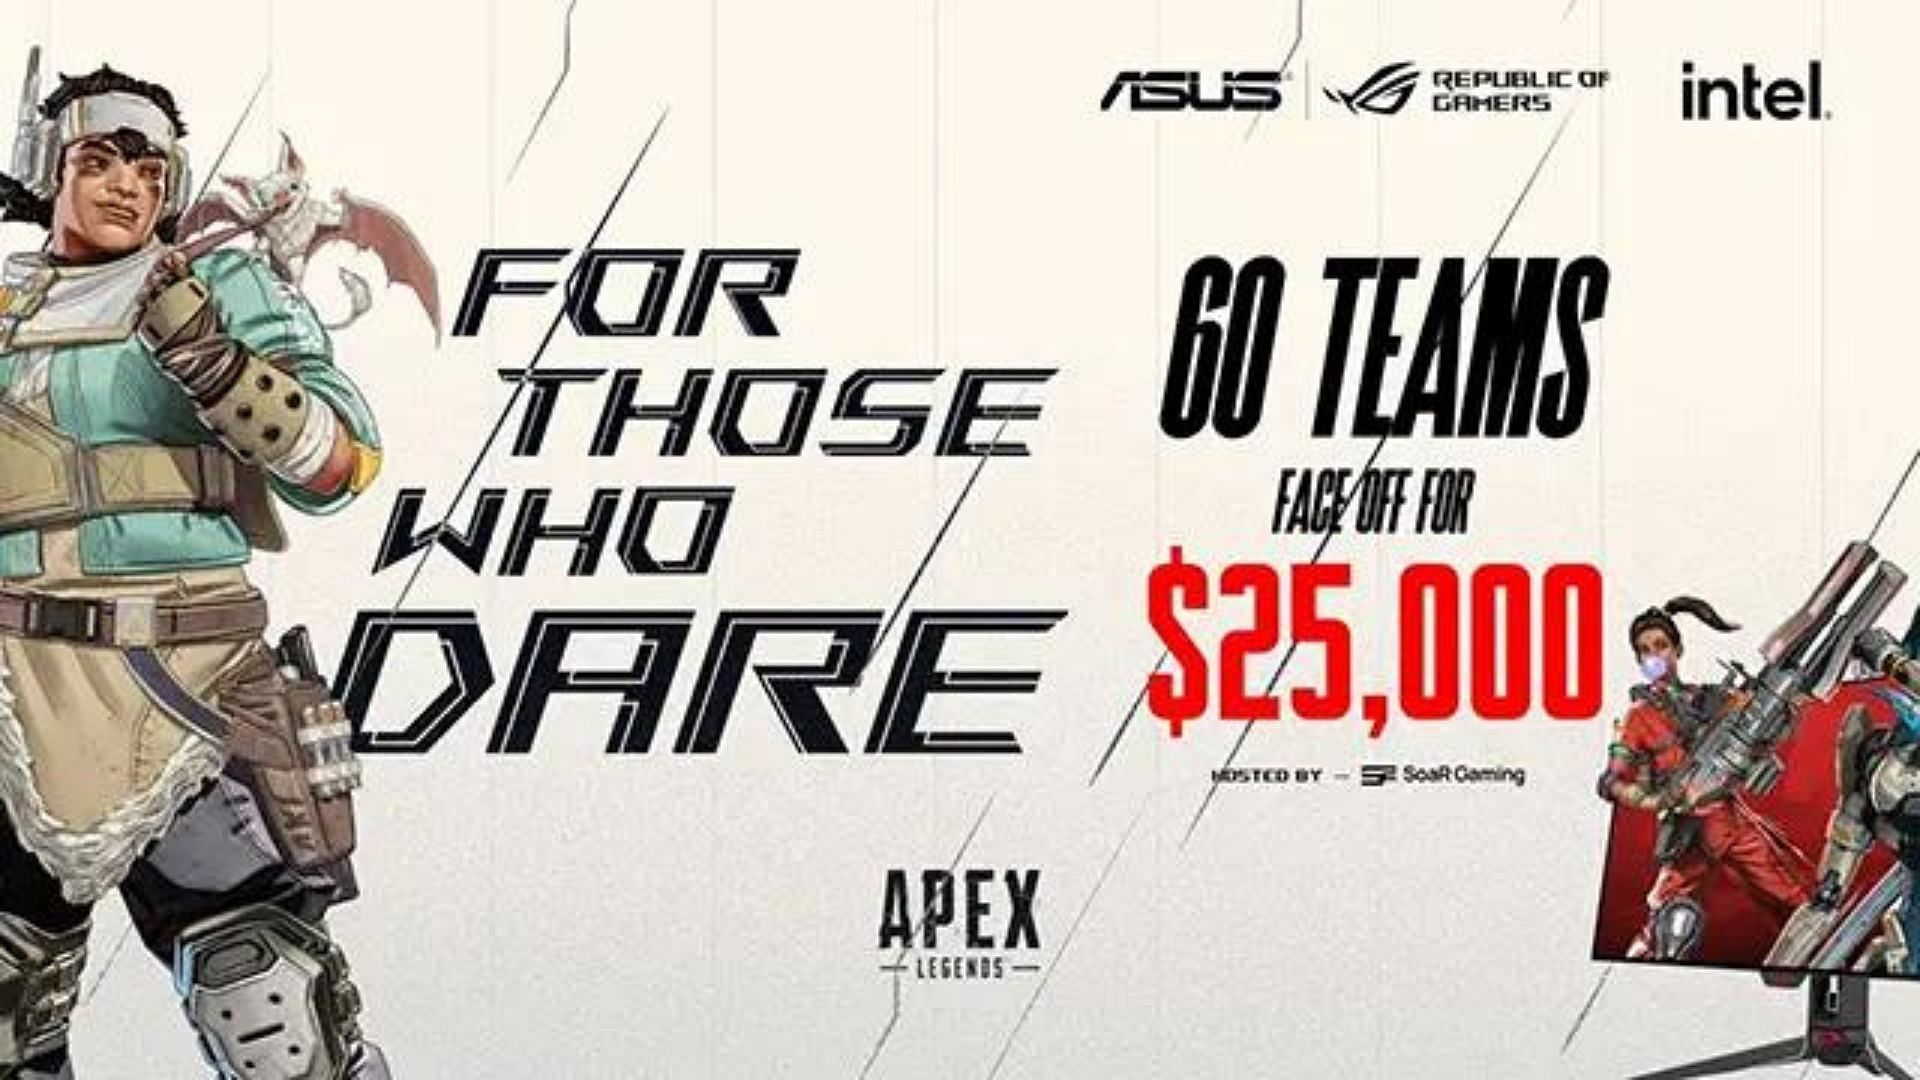 Apex Legends For Those Who Dare tournament (Image via ASUS ROG)